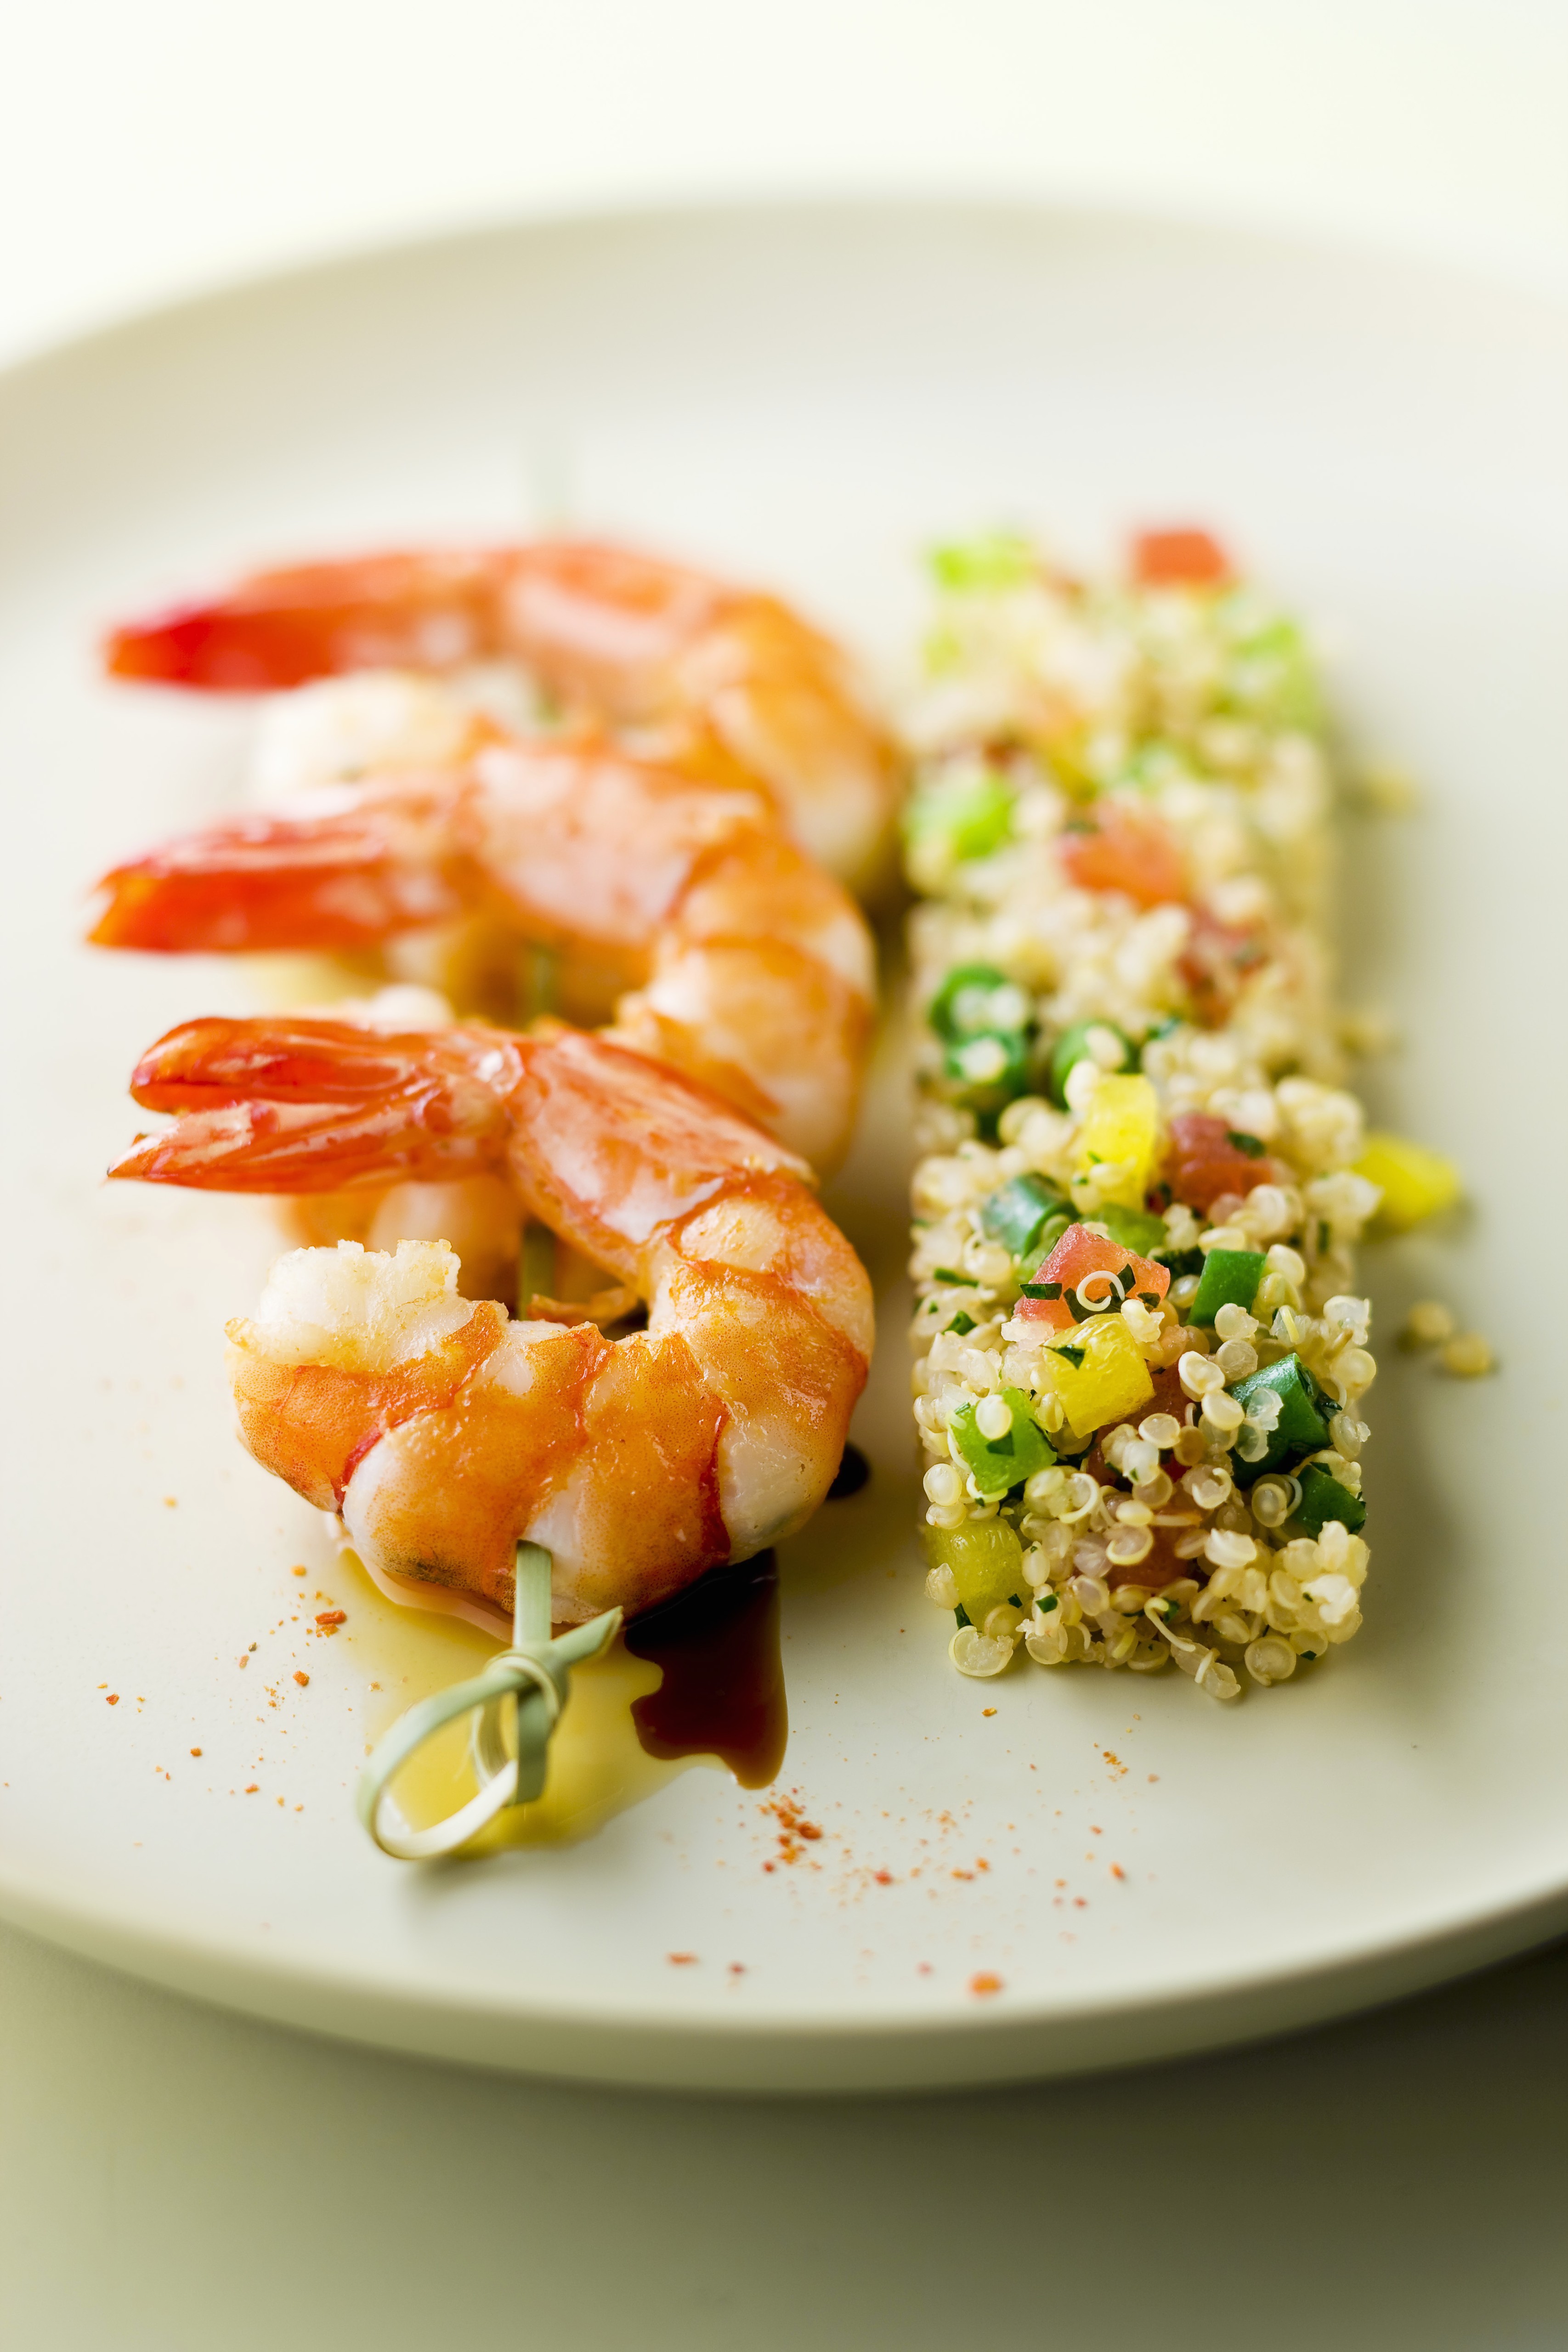 Shrimp brochette and bar of quinoa tabbouleh